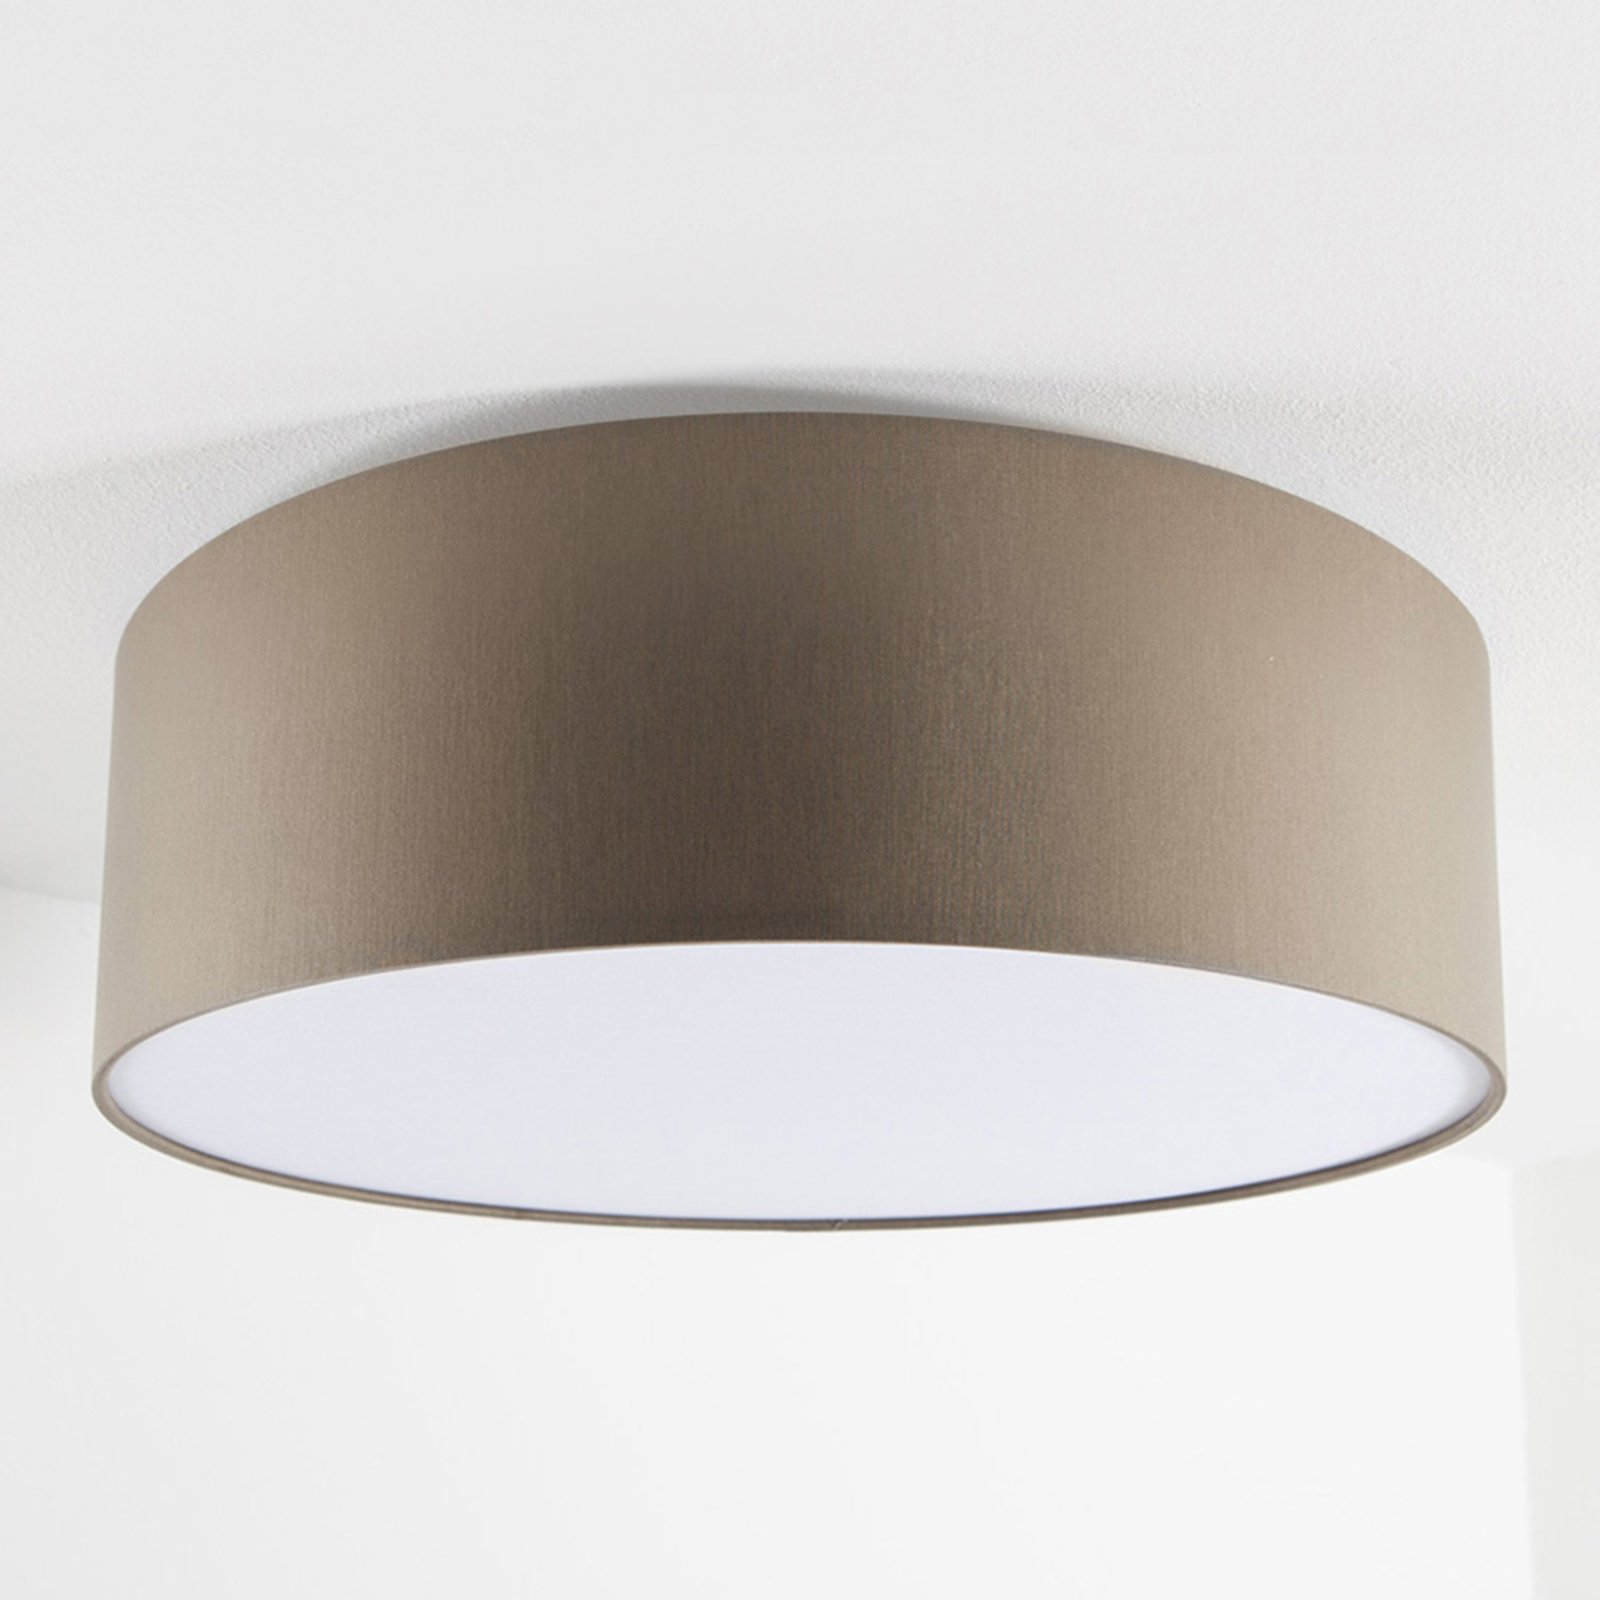 Sivo-smeđa stropna svjetiljka Mara, 50 cm